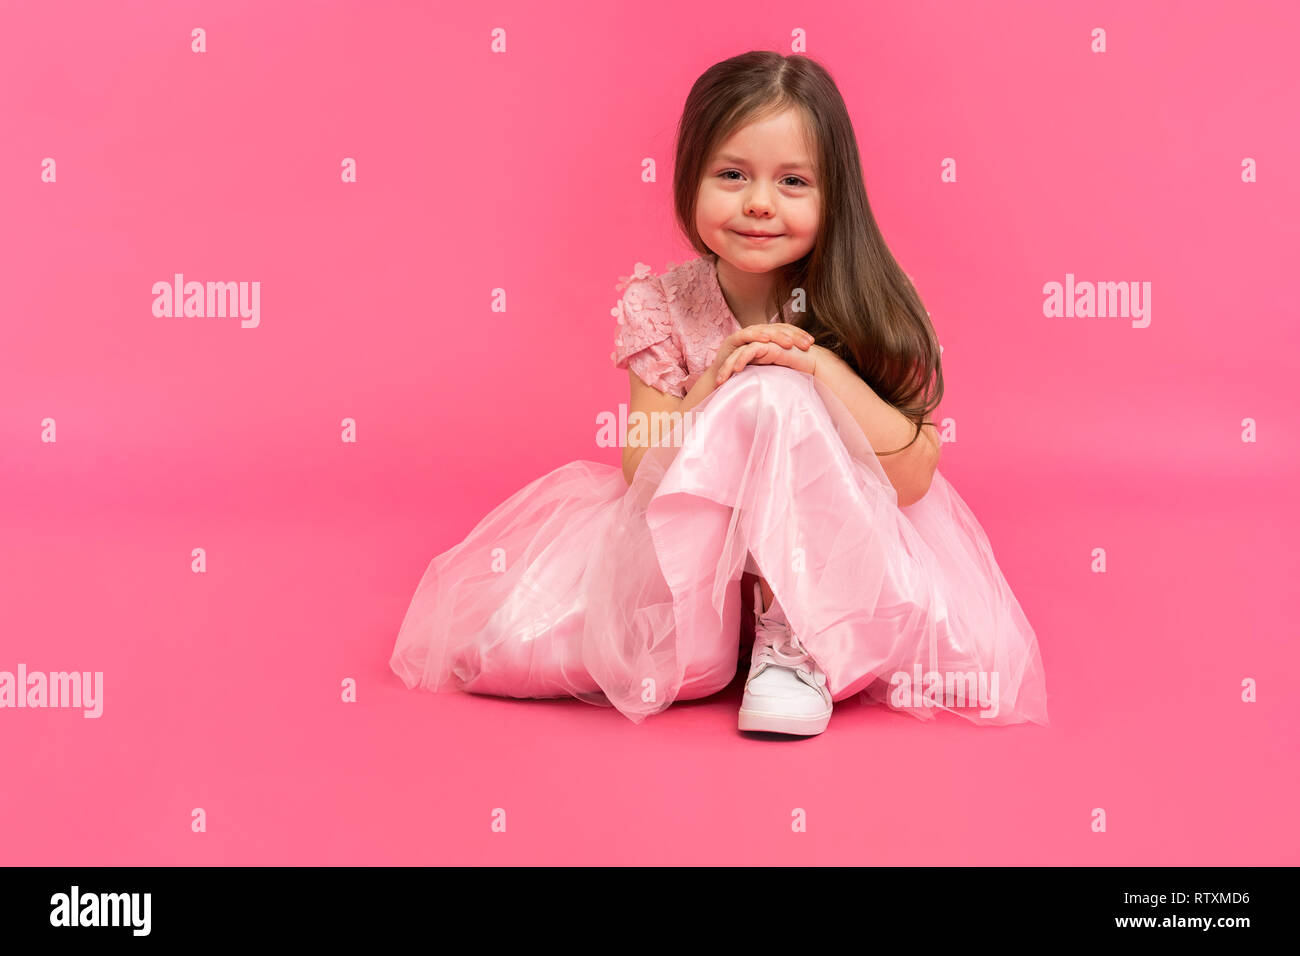 Kleines Mädchen, Studio Portrait von schönes Kind in rosa Kleid über rosa Hintergrund. Stockfoto